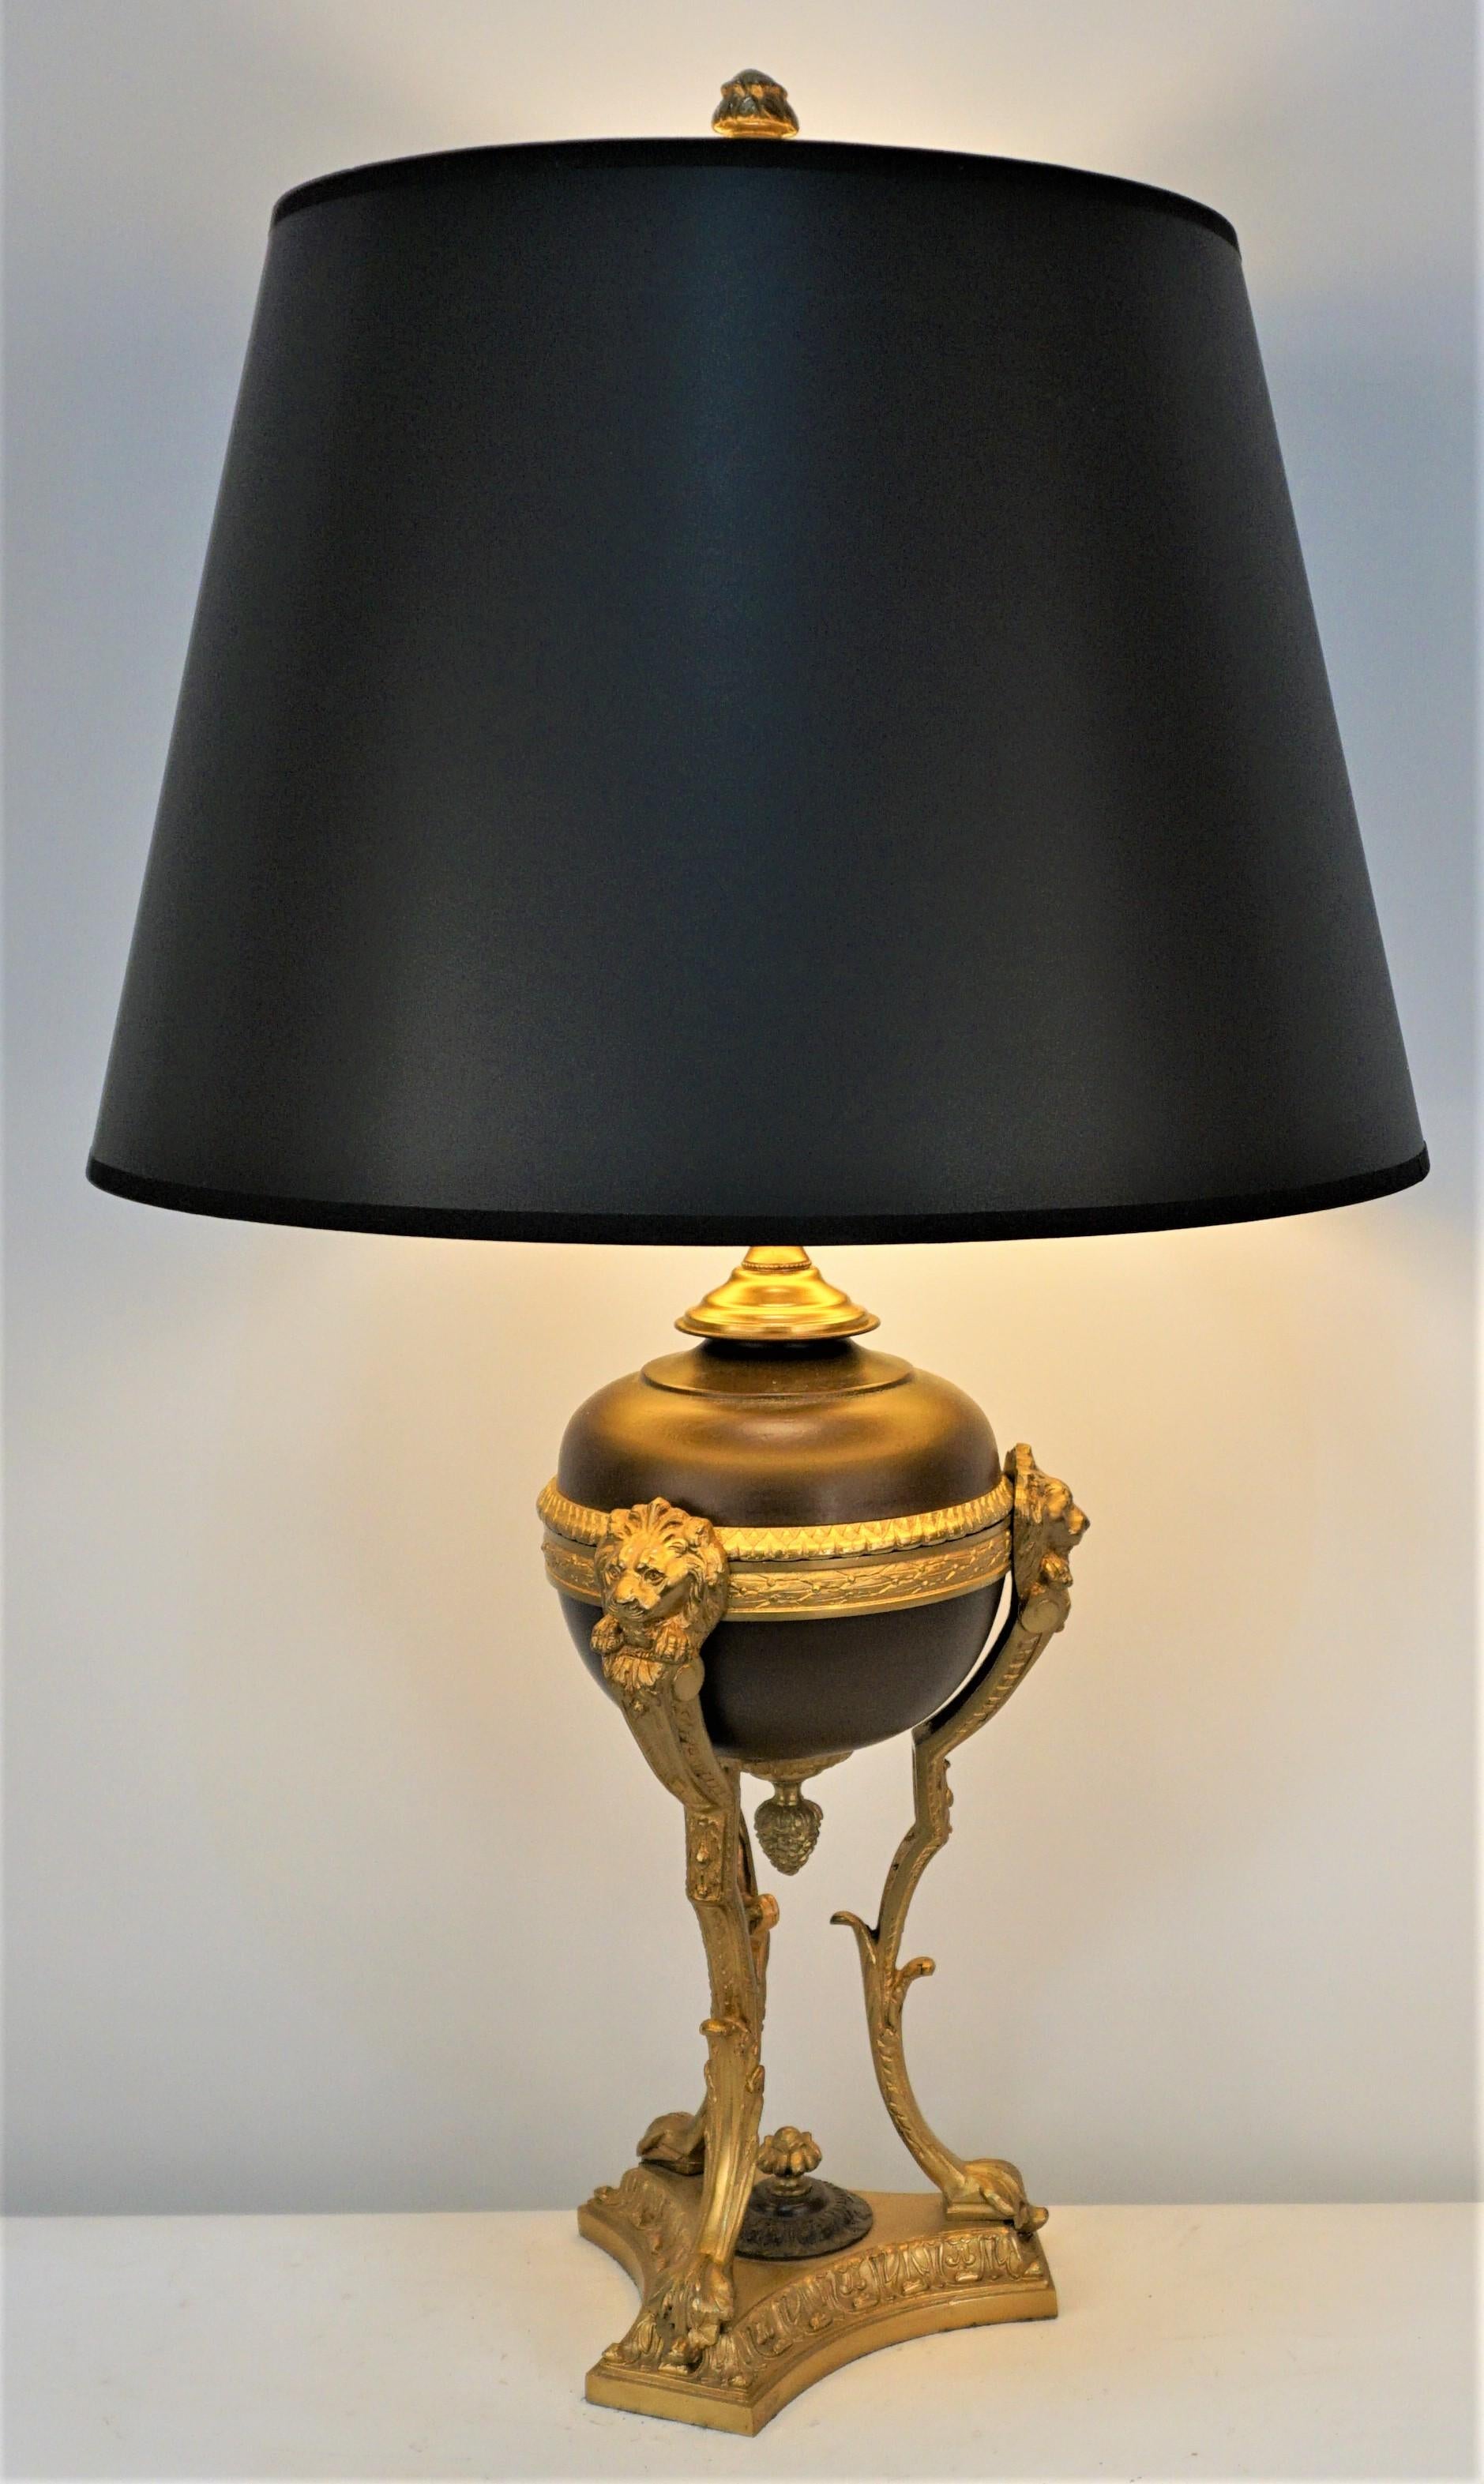 Lampe à huile en bronze électrifié et laque brune sur bronze, avec douille à trois voies et abat-jour en soie, de style Empire français.